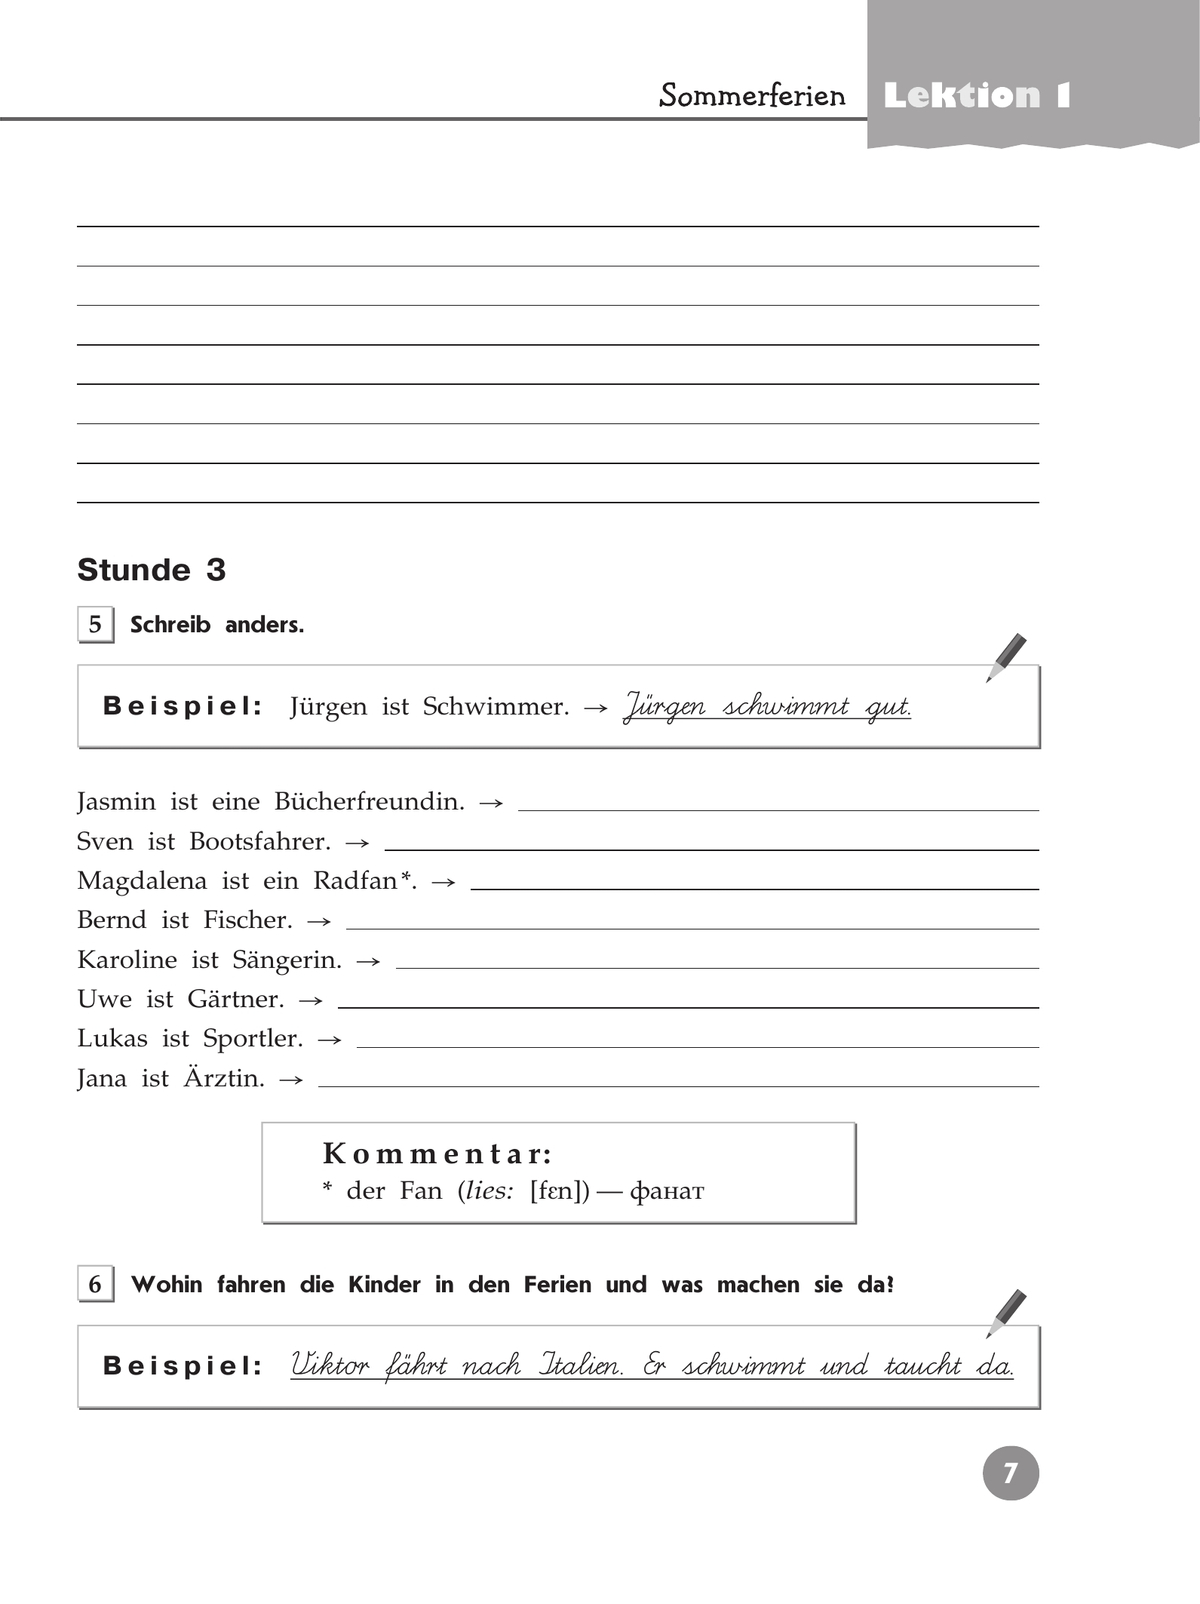 Немецкий язык. Рабочая тетрадь. 7 класс 9